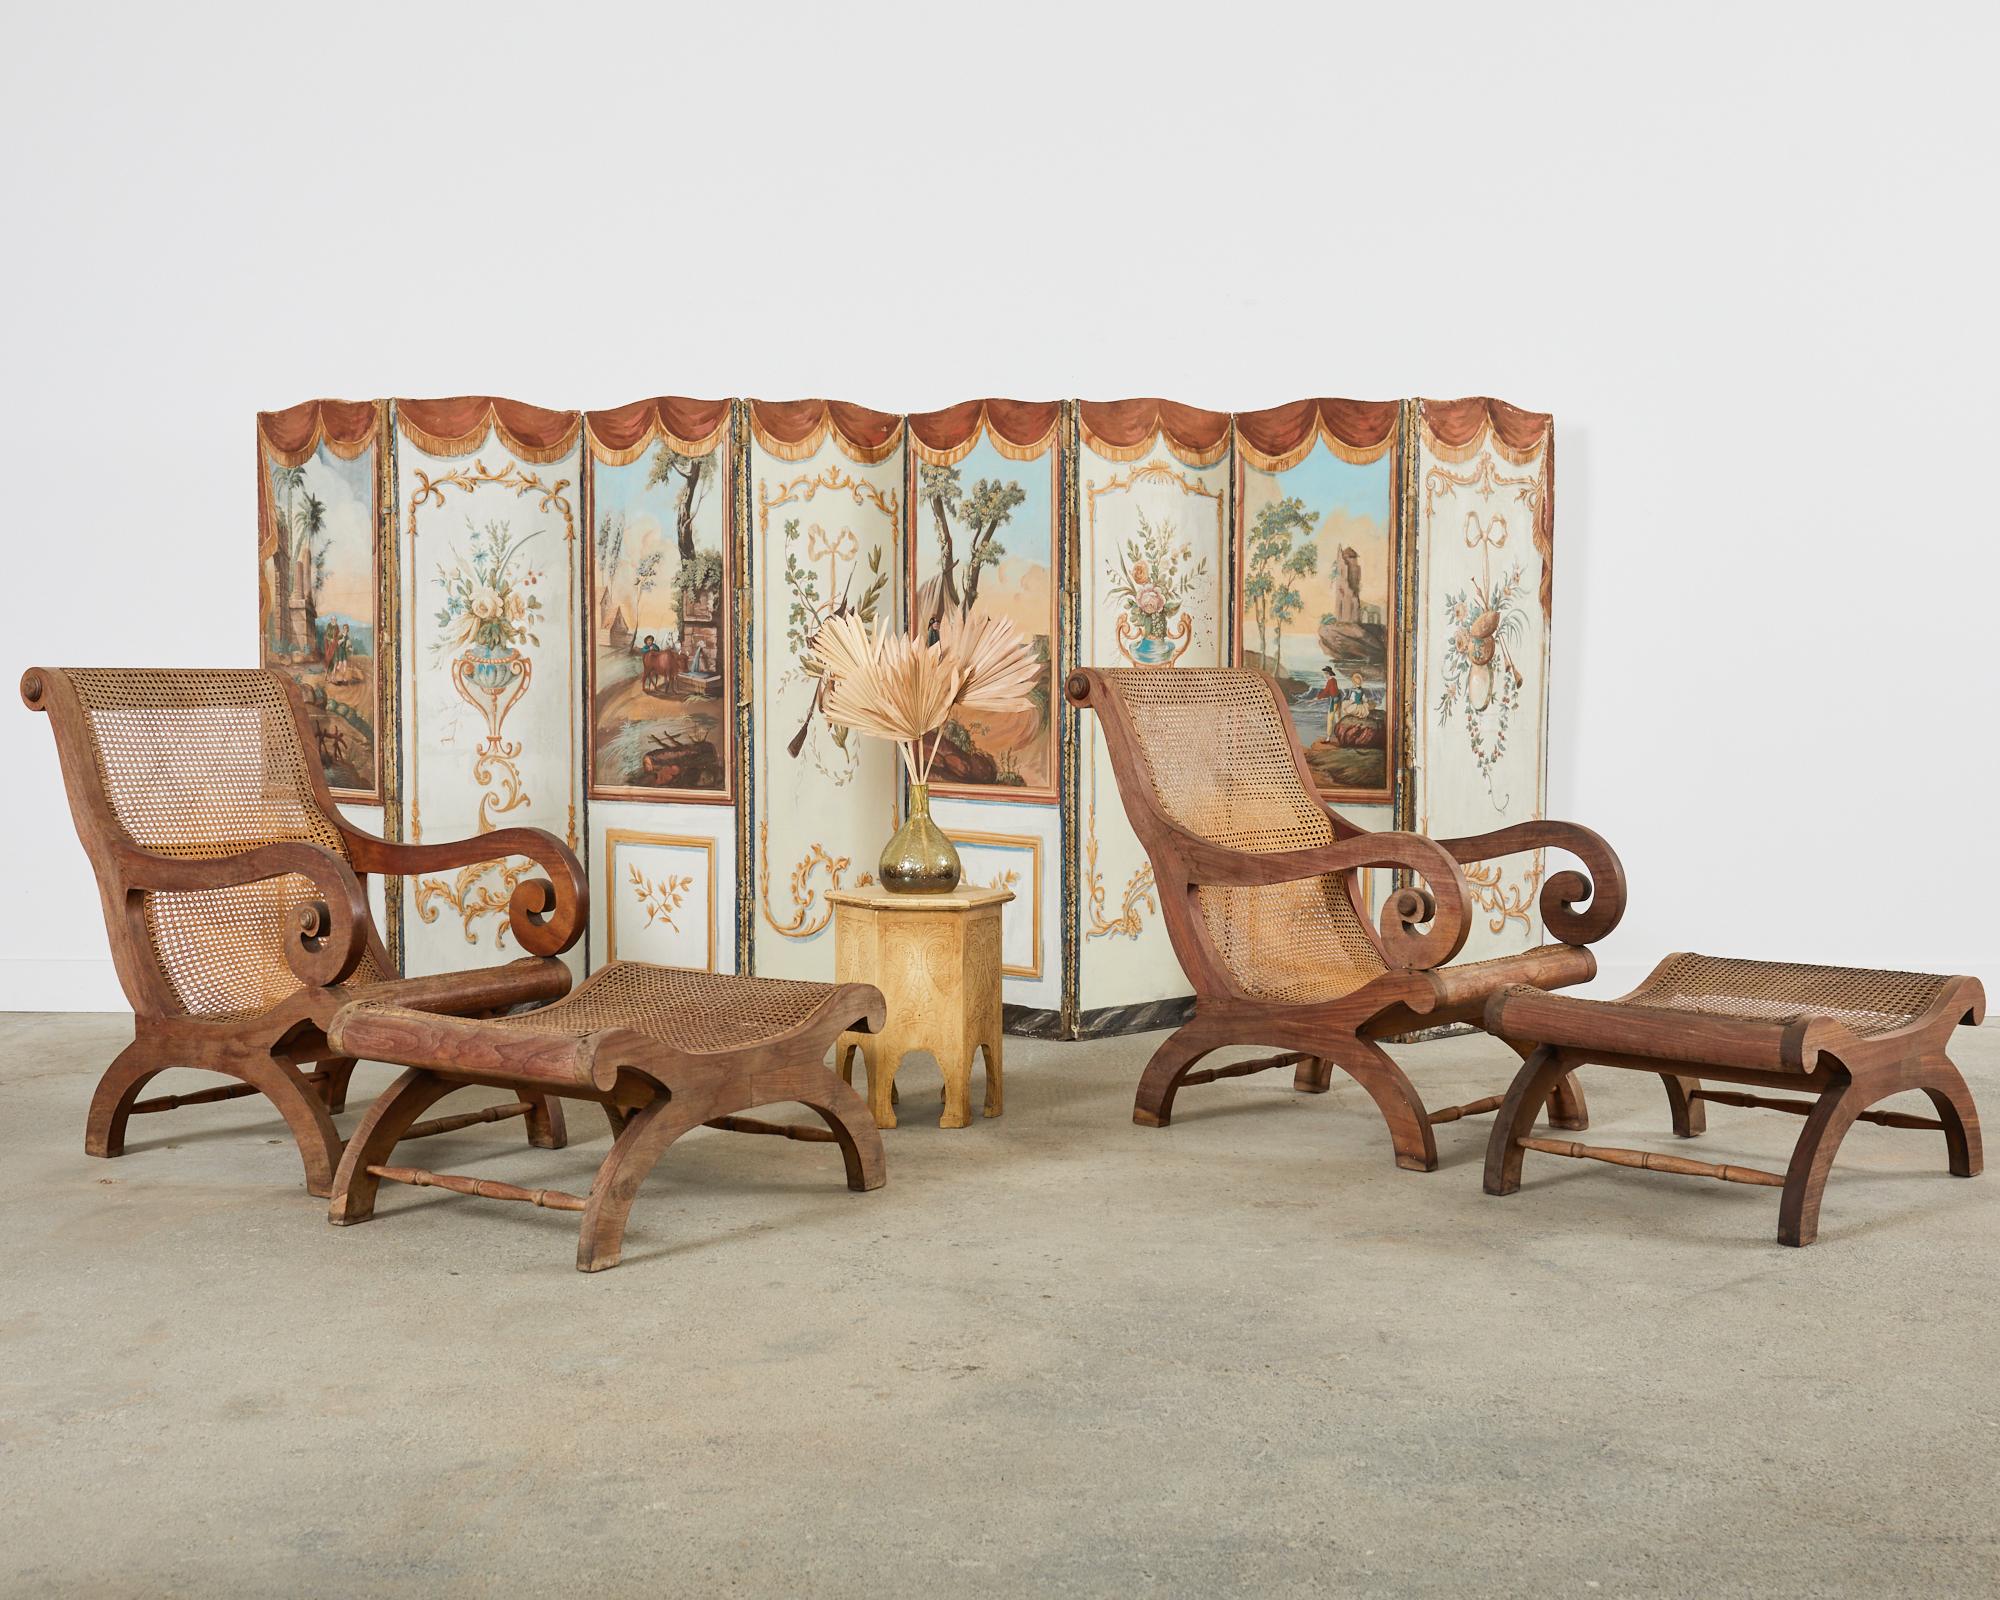 Magnifique paire de chaises longues de plantation anglo-indienne avec ottomans assortis, fabriquées dans le style Grand British Coloni. Les chaises présentent un cadre en teck gracieusement sculpté avec de grands bras à volutes. L'assise et le